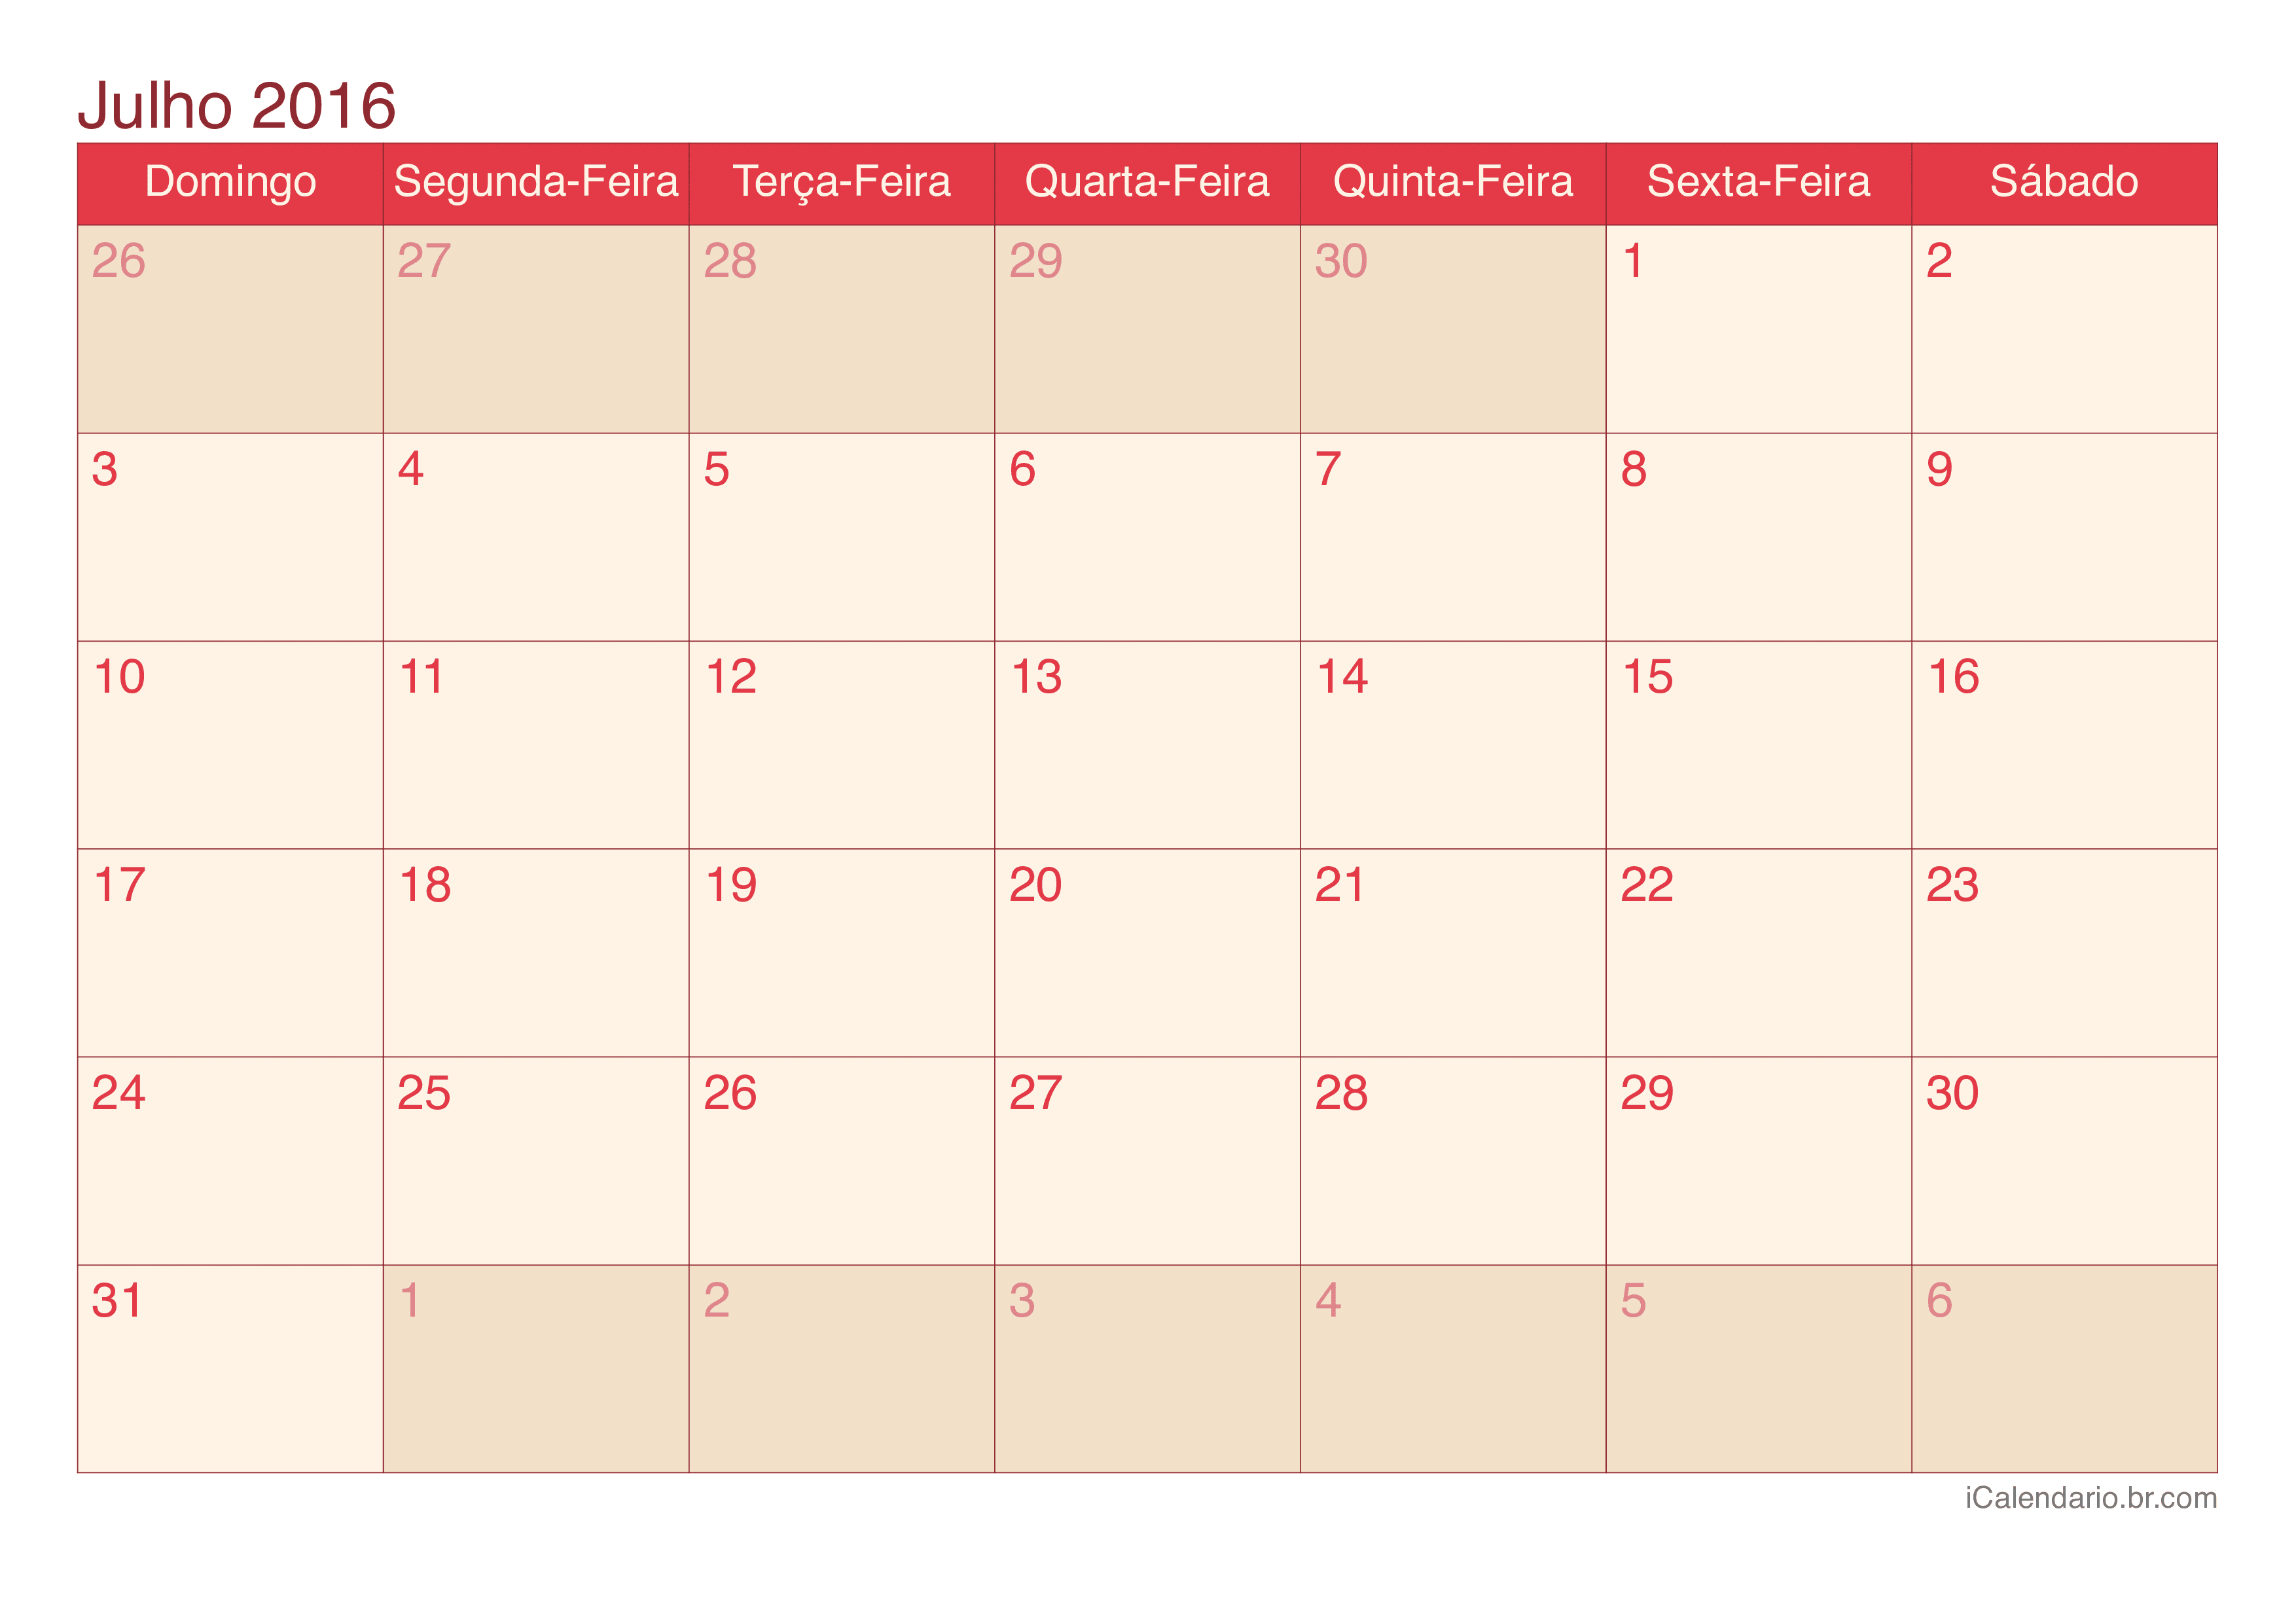 Calendário de julho 2016 - Cherry